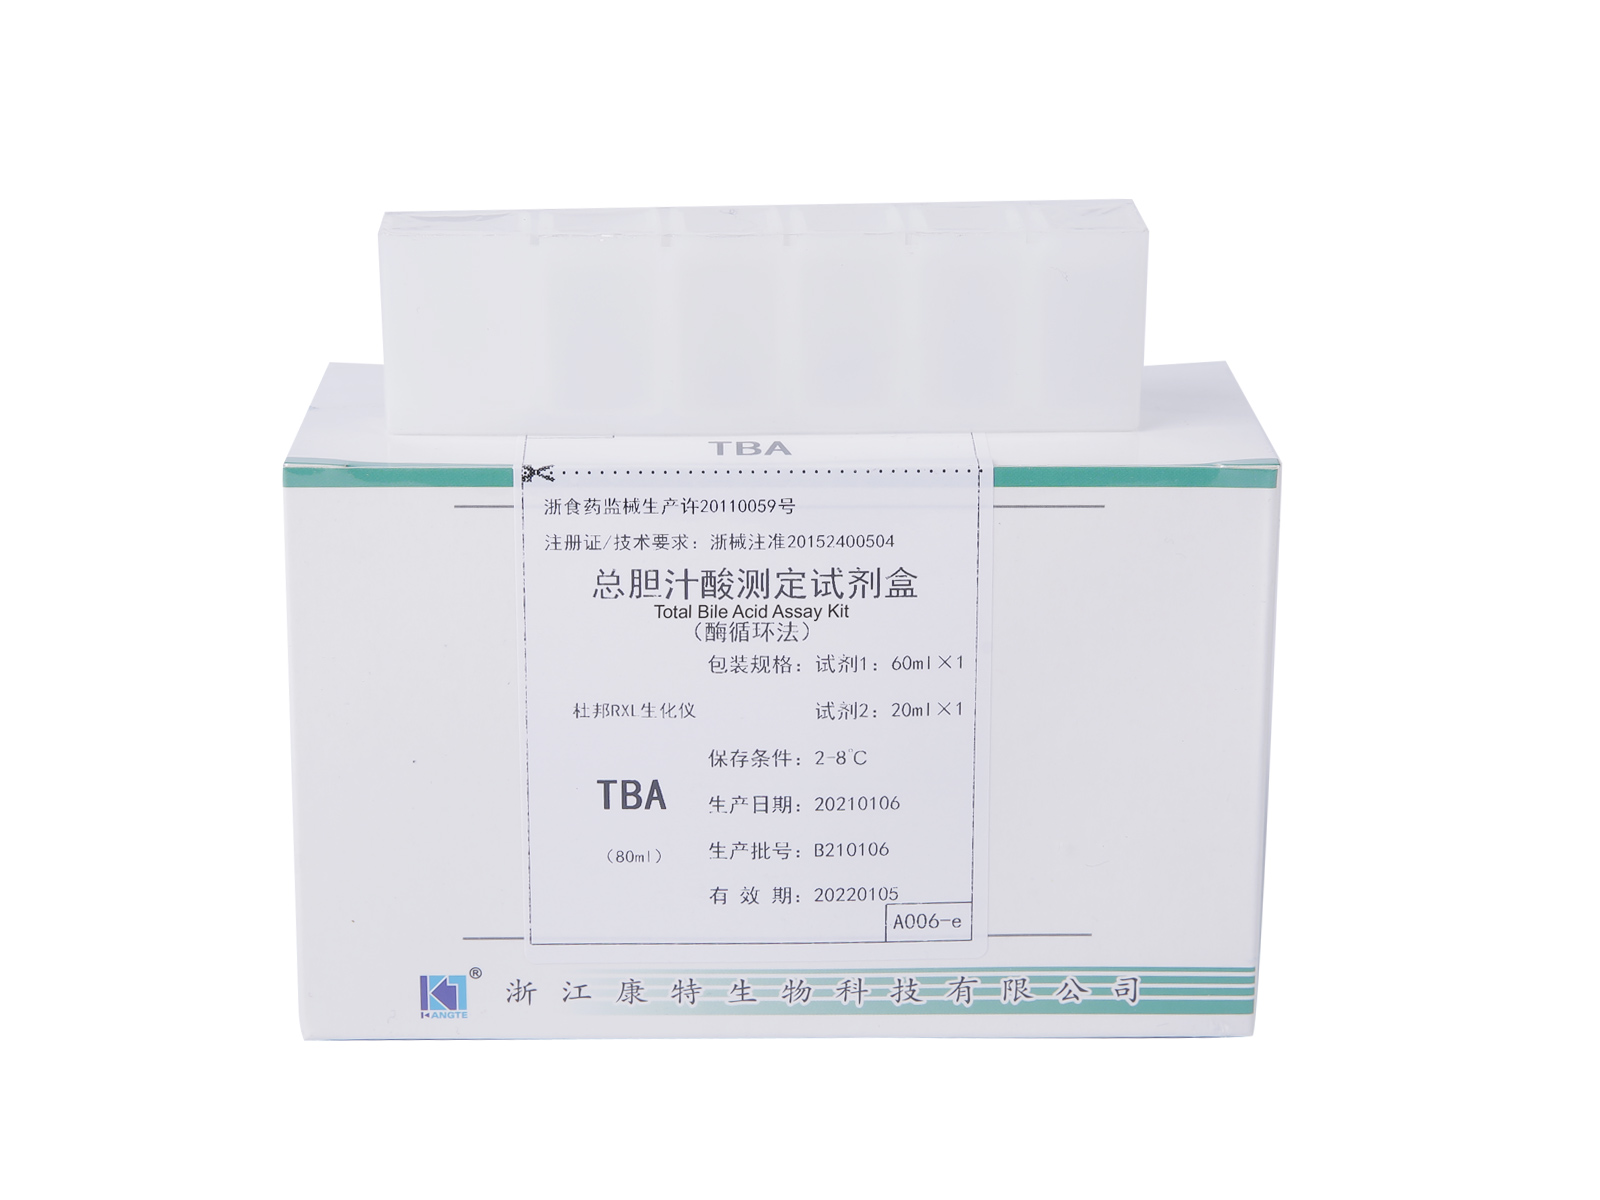 【TBA】Komplet za analizu ukupne žučne kiseline (metoda ciklusa enzima)